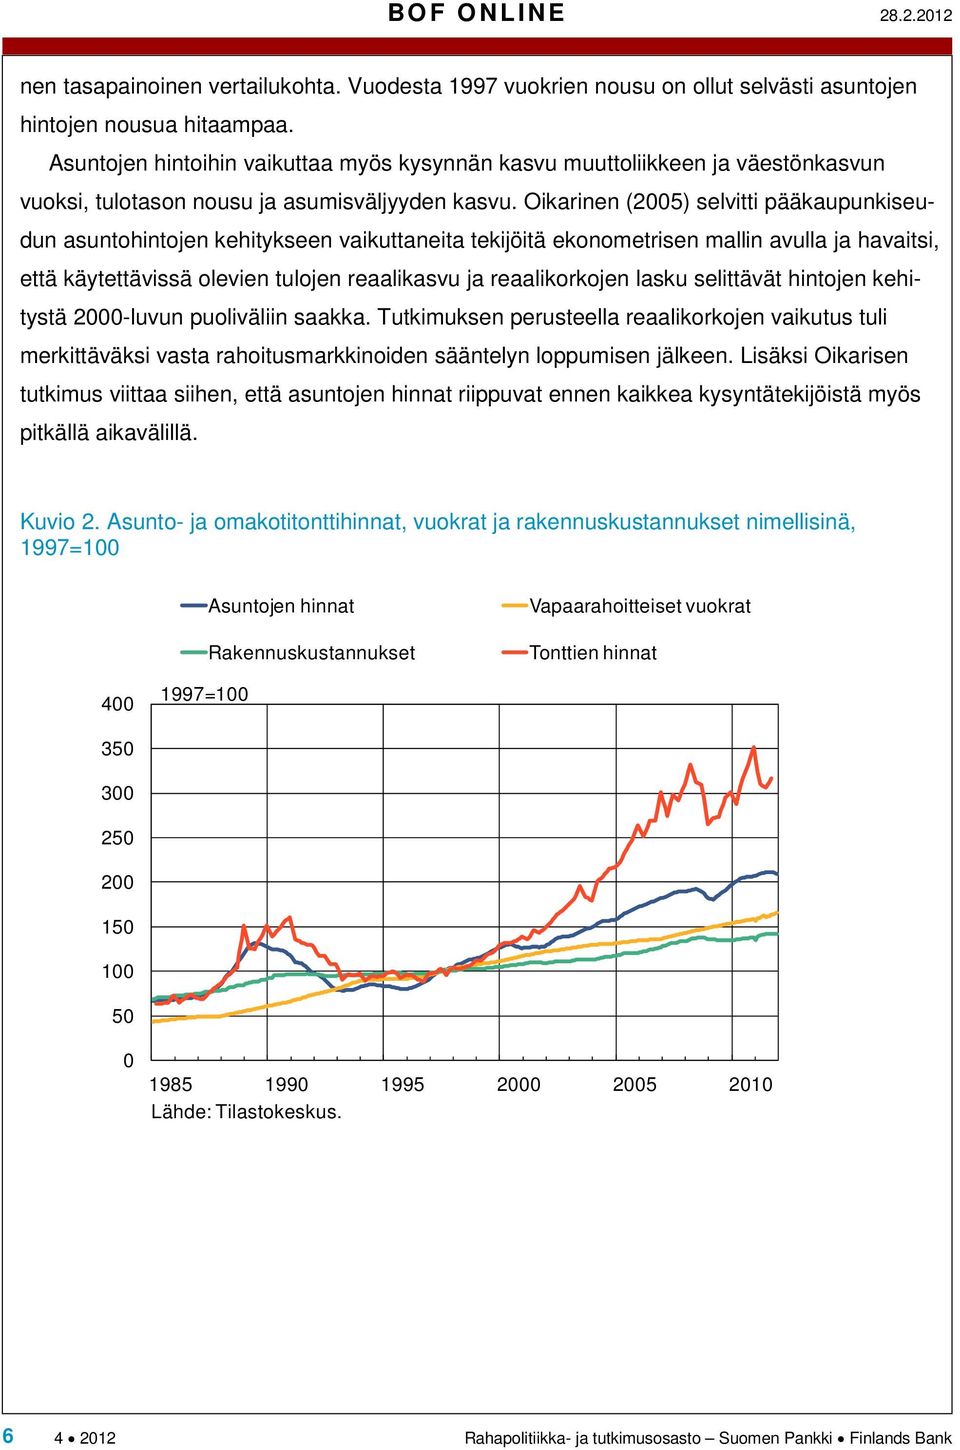 Oikarinen (2005) selvitti pääkaupunkiseudun asuntohintojen kehitykseen vaikuttaneita tekijöitä ekonometrisen mallin avulla ja havaitsi, että käytettävissä olevien tulojen reaalikasvu ja